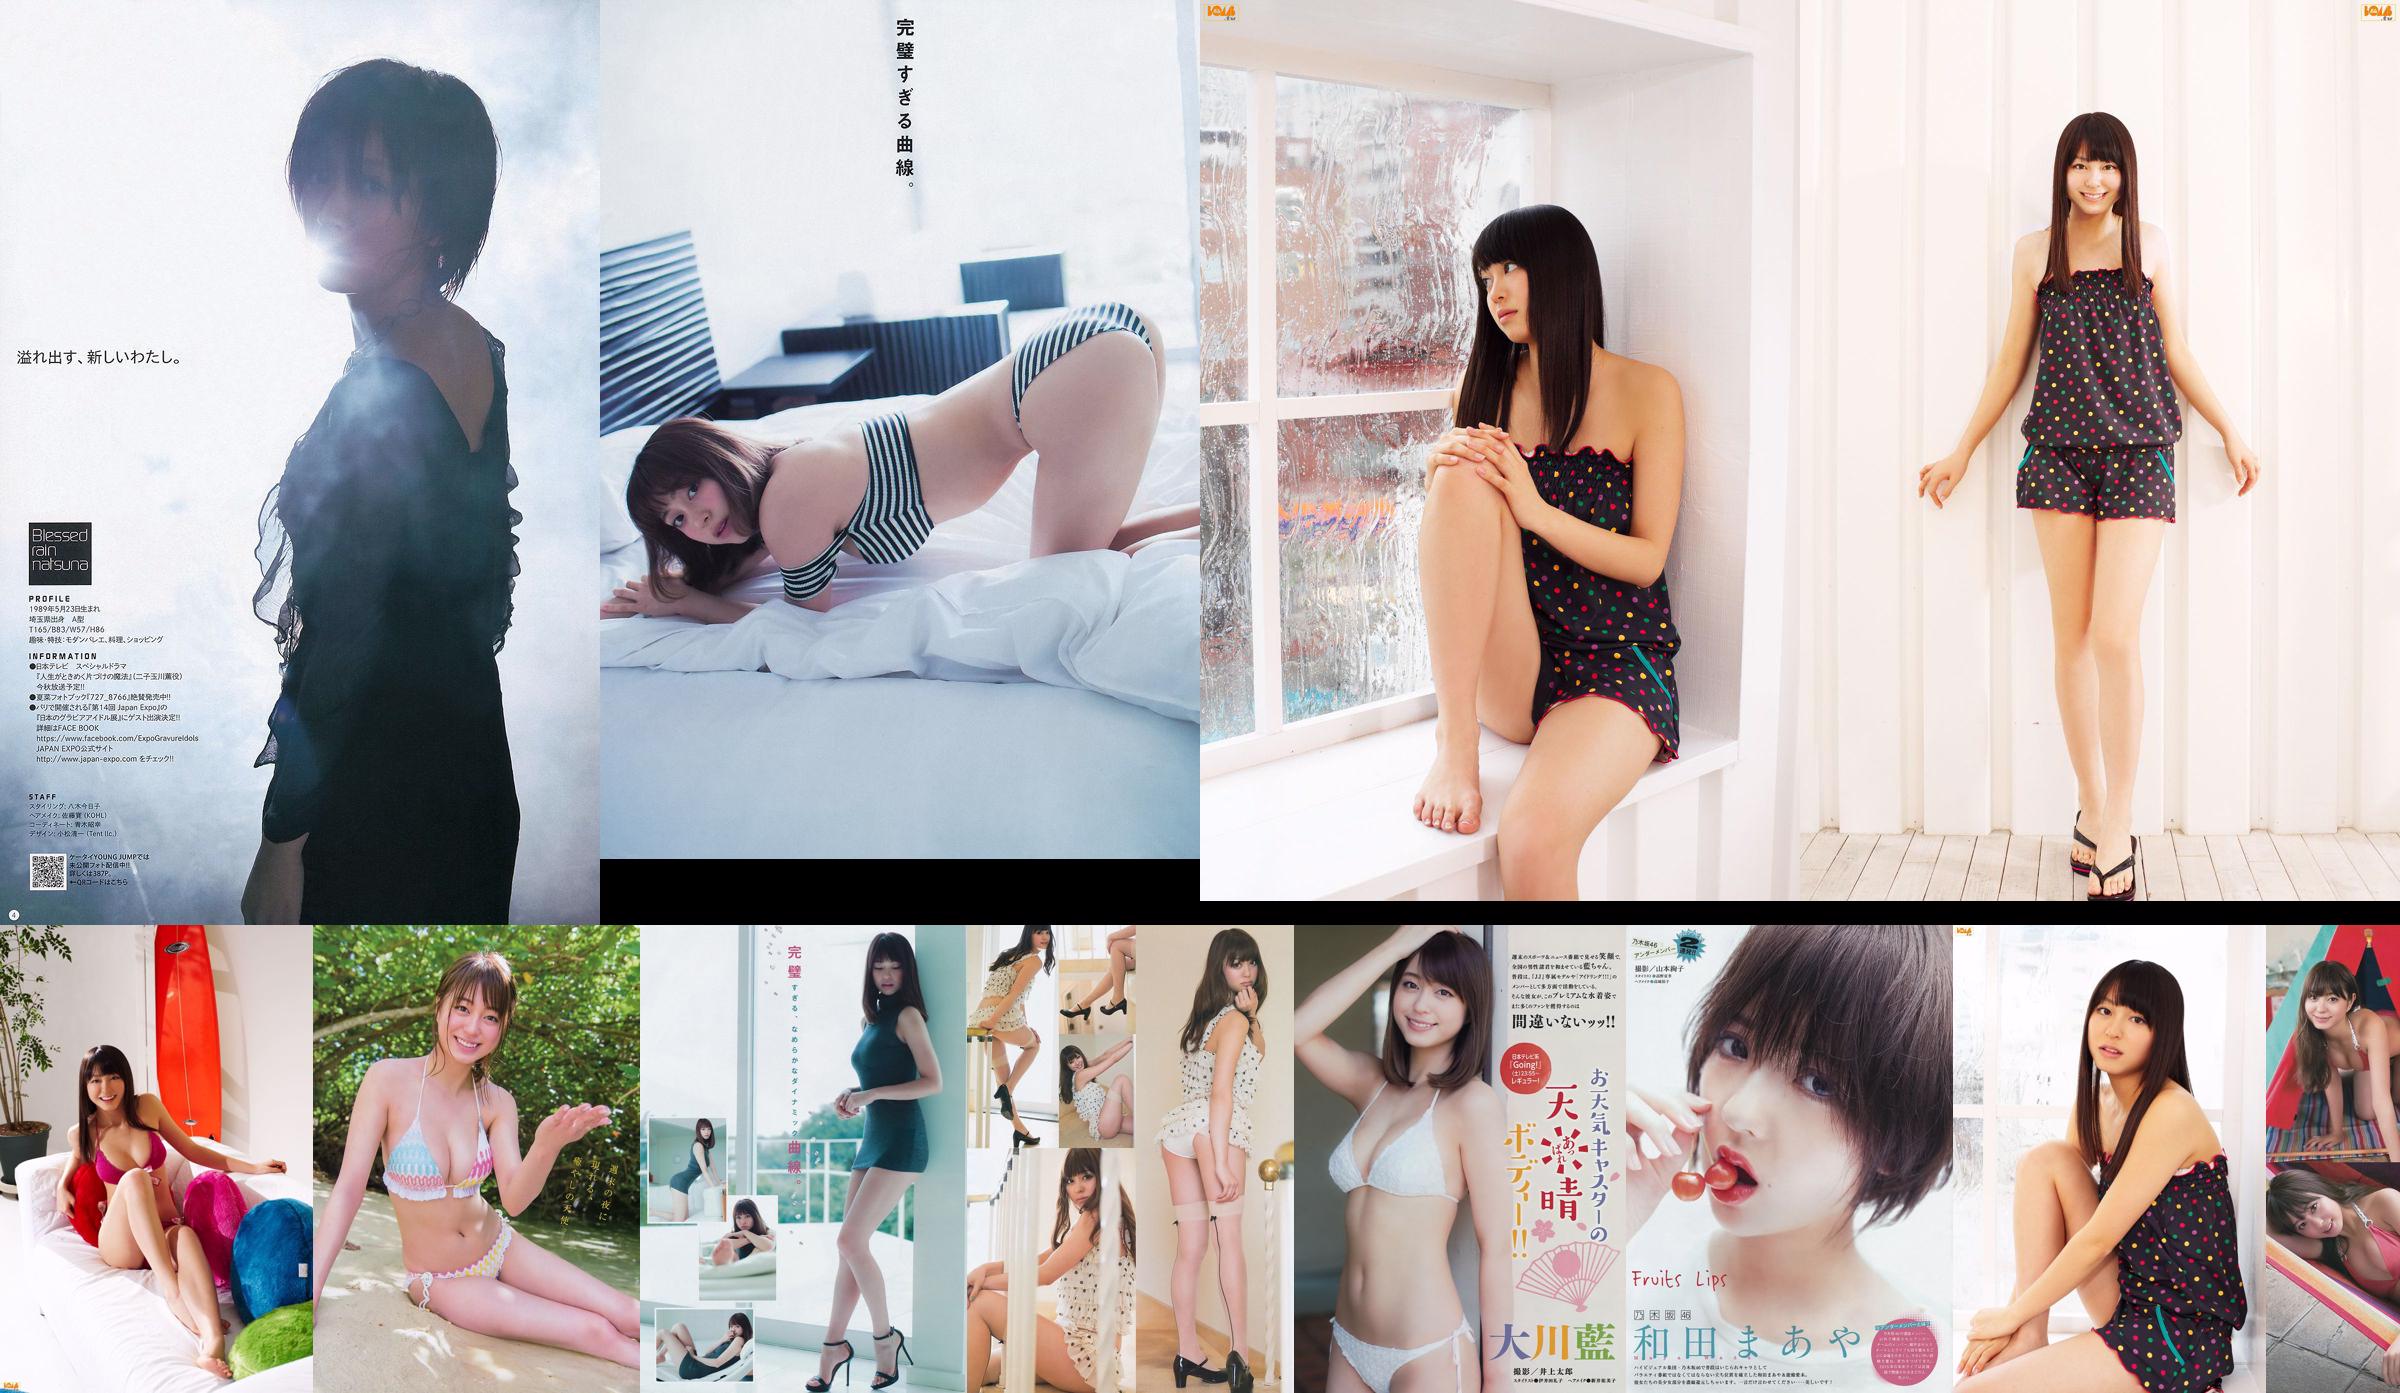 [Young Magazine] Okawa Blue, Tano Yuka, Murayama Ayaki 2015 No.31 Photo Magazine No.afc176 Página 1